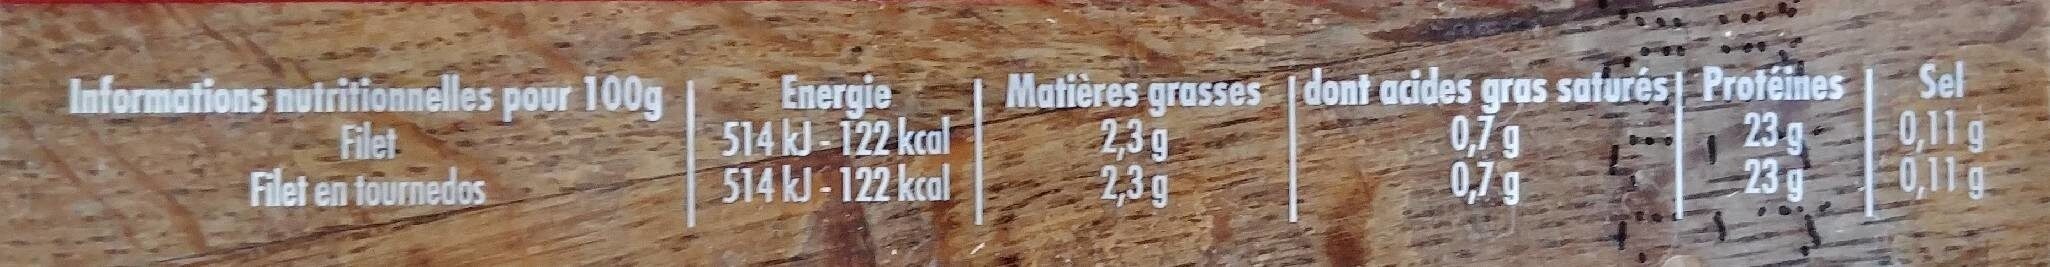 Filet Poulet Blanc Maître Coq - Nutrition facts - fr